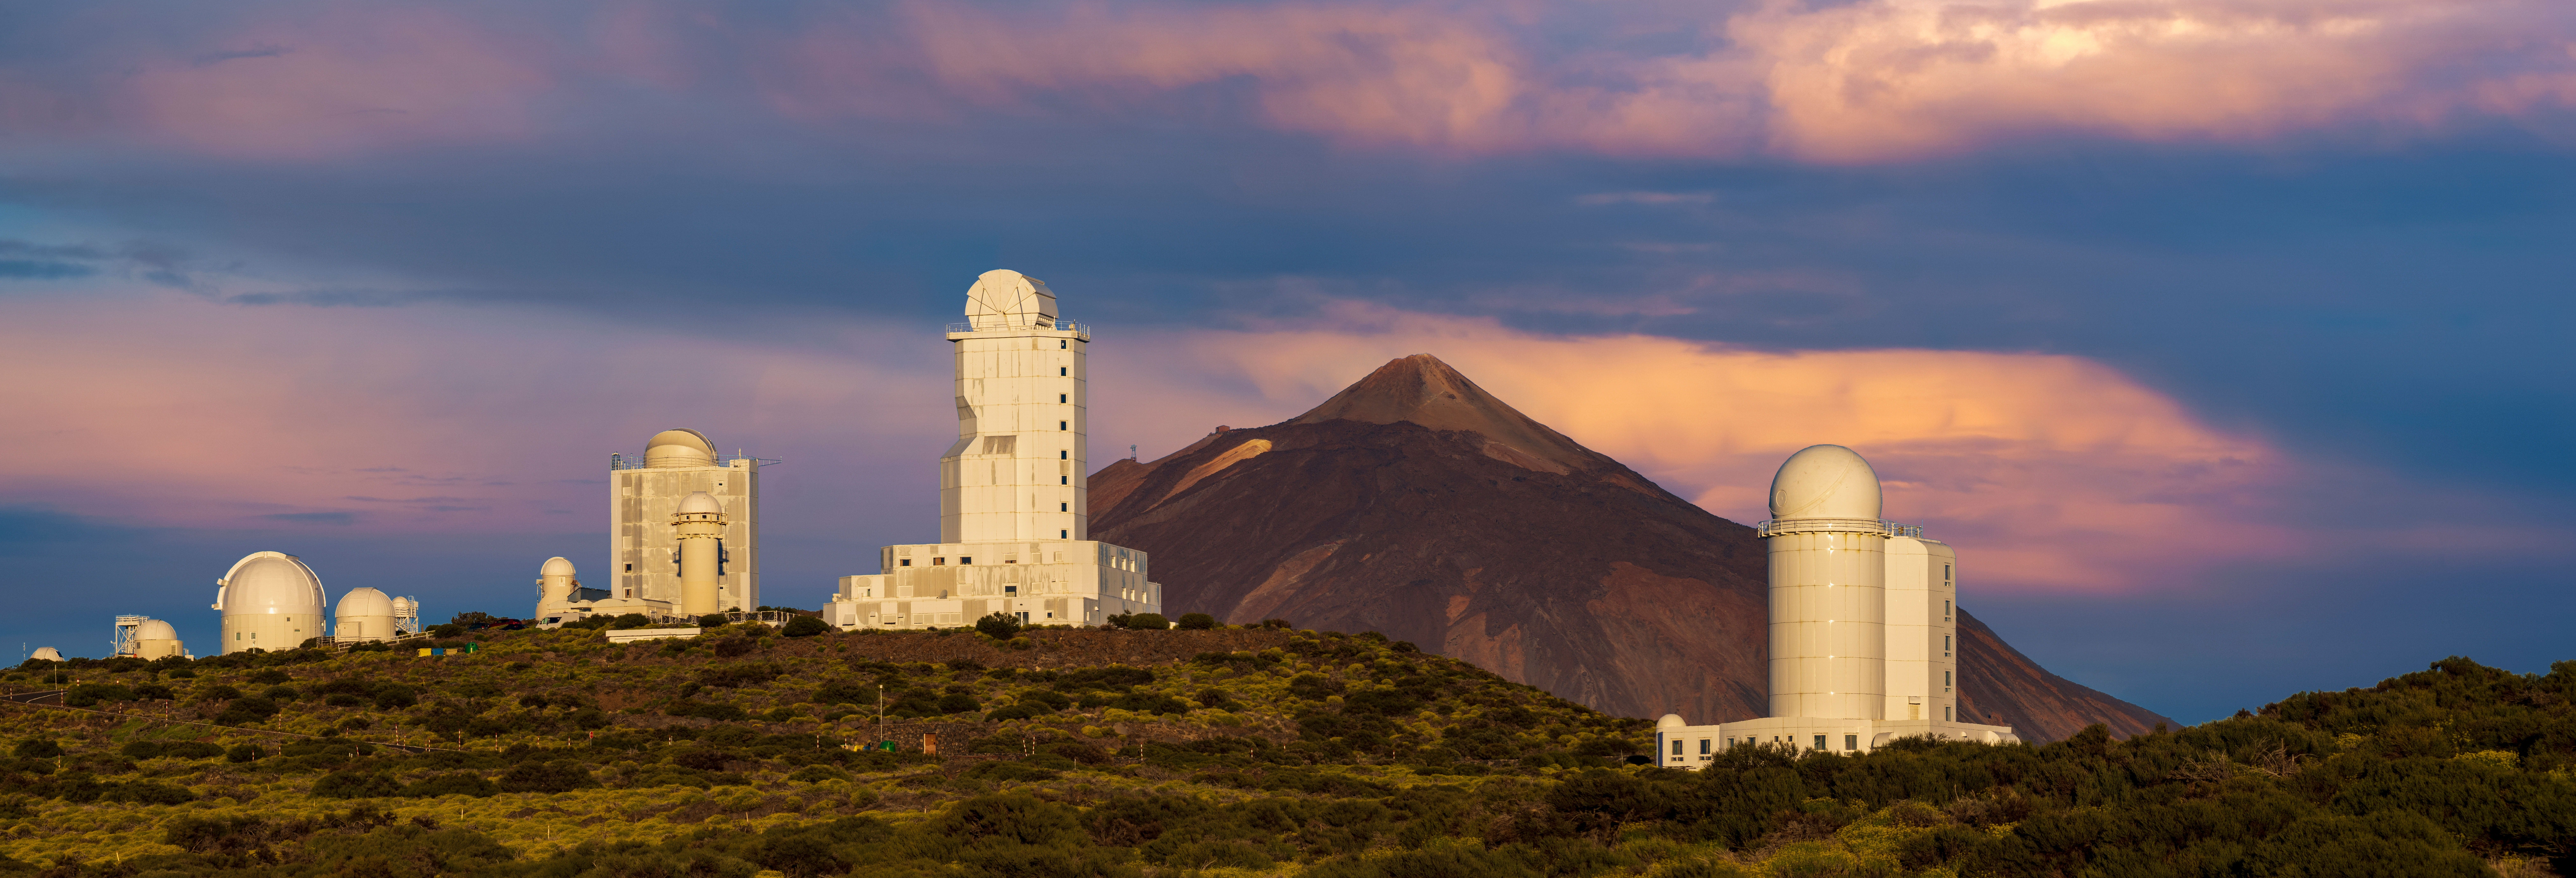 Tour astronómico por el Teide desde el sur de Tenerife